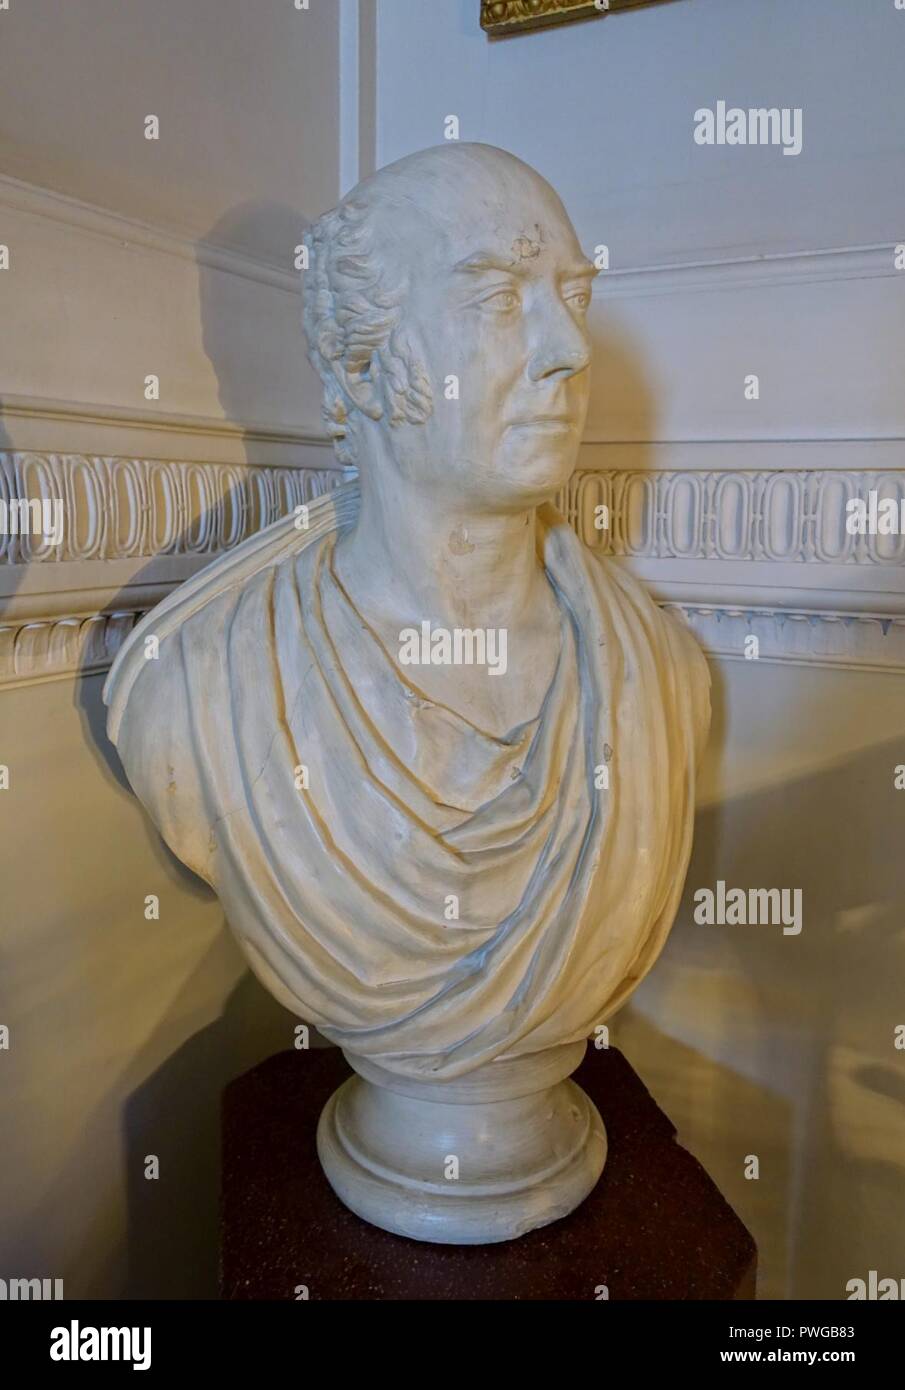 Busto di Giovanni Francesco (1780 - 1861), 1819, gesso di Parigi - Shugborough Hall - Staffordshire, Inghilterra - Foto Stock